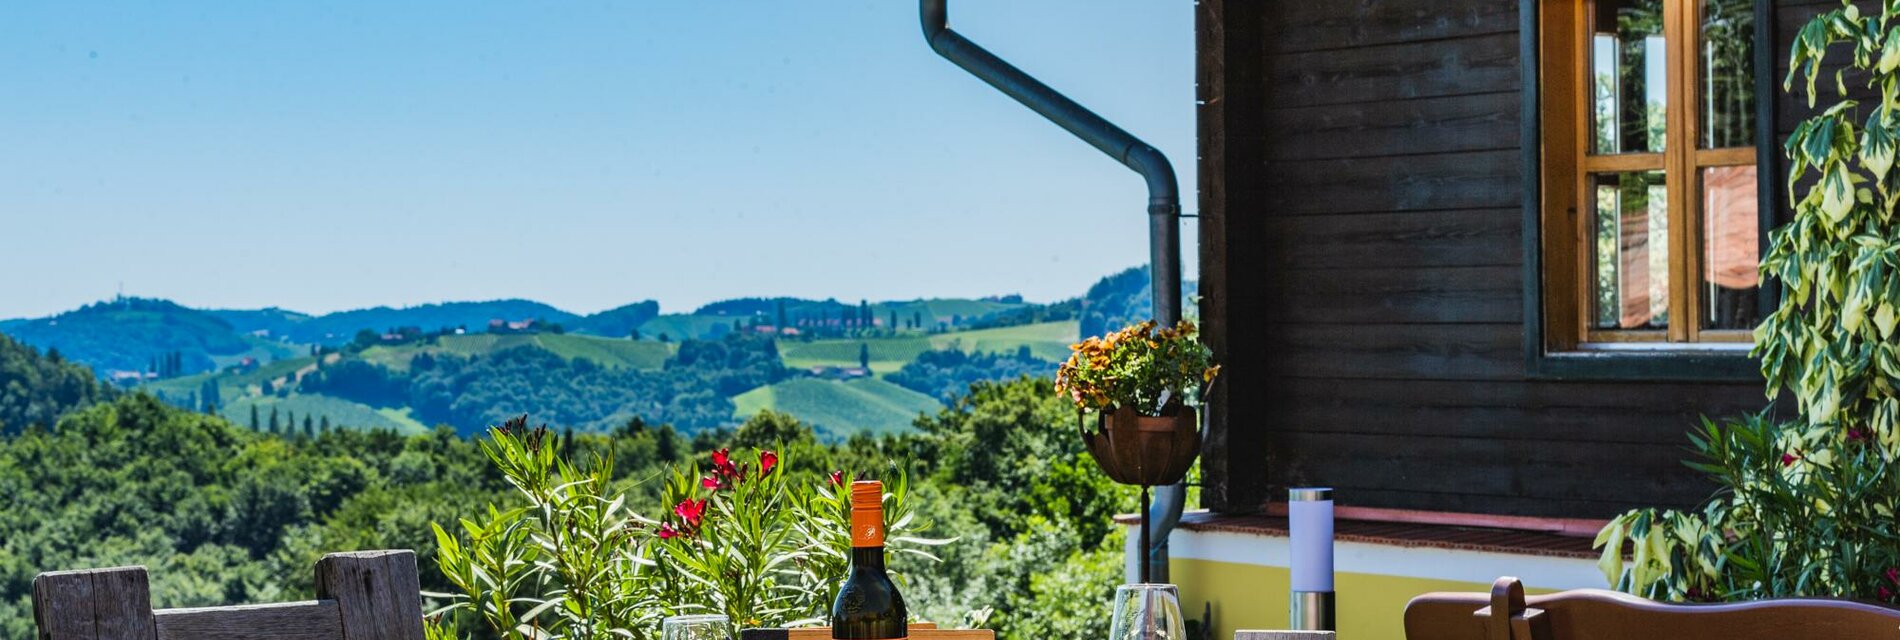 Terrasse mit Blick in den Weingarten